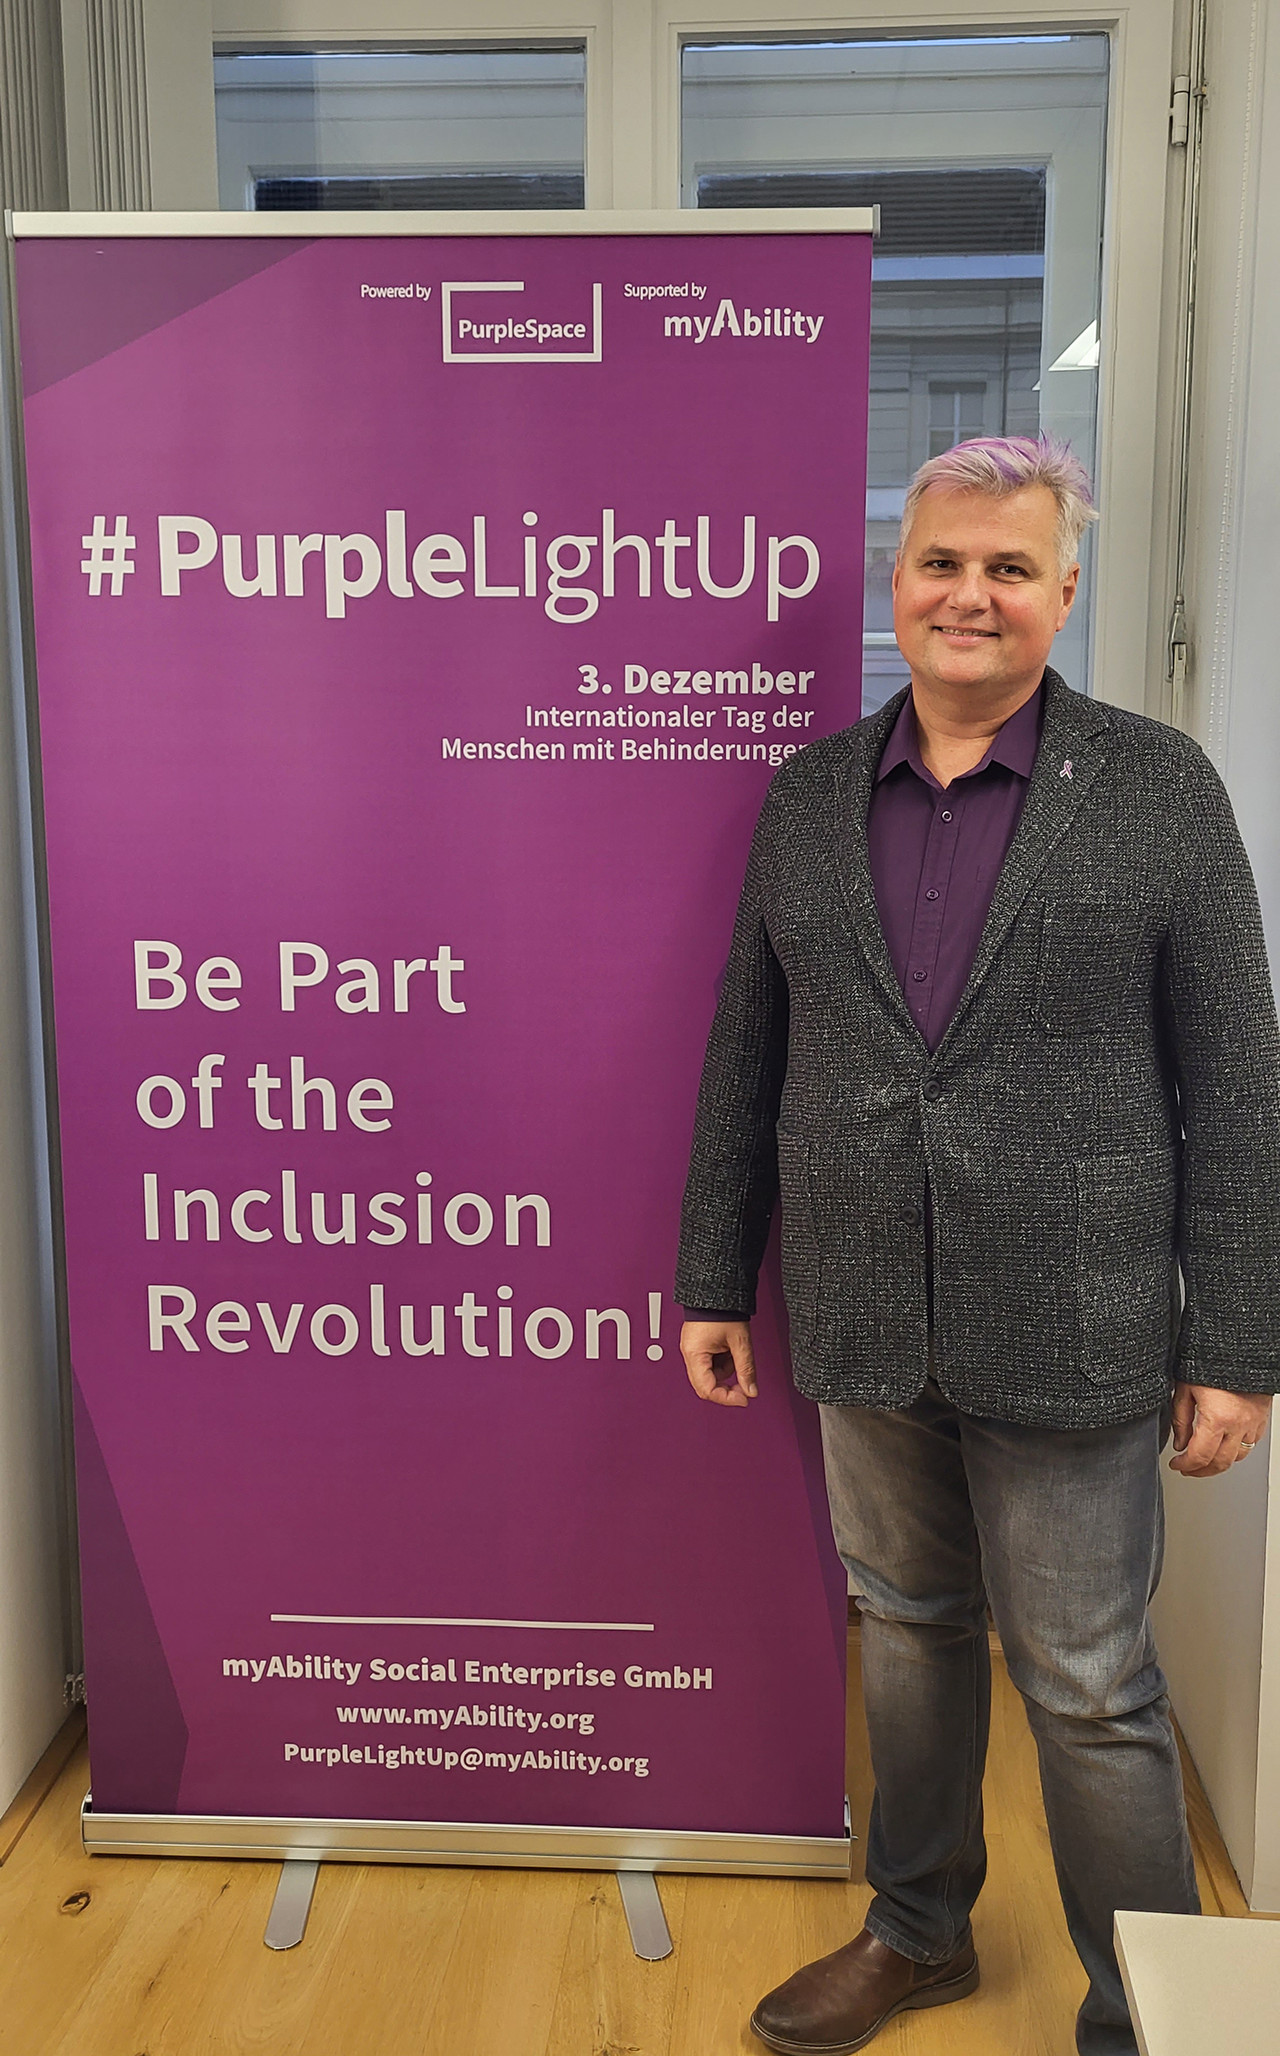 Robert Öllinger mit lila gefärbtem Haar, neben einem lila Roll-Up "#PurpleLightUp - 3. Dezember, Internationaler Tag der Menschen mit Behinderungen"